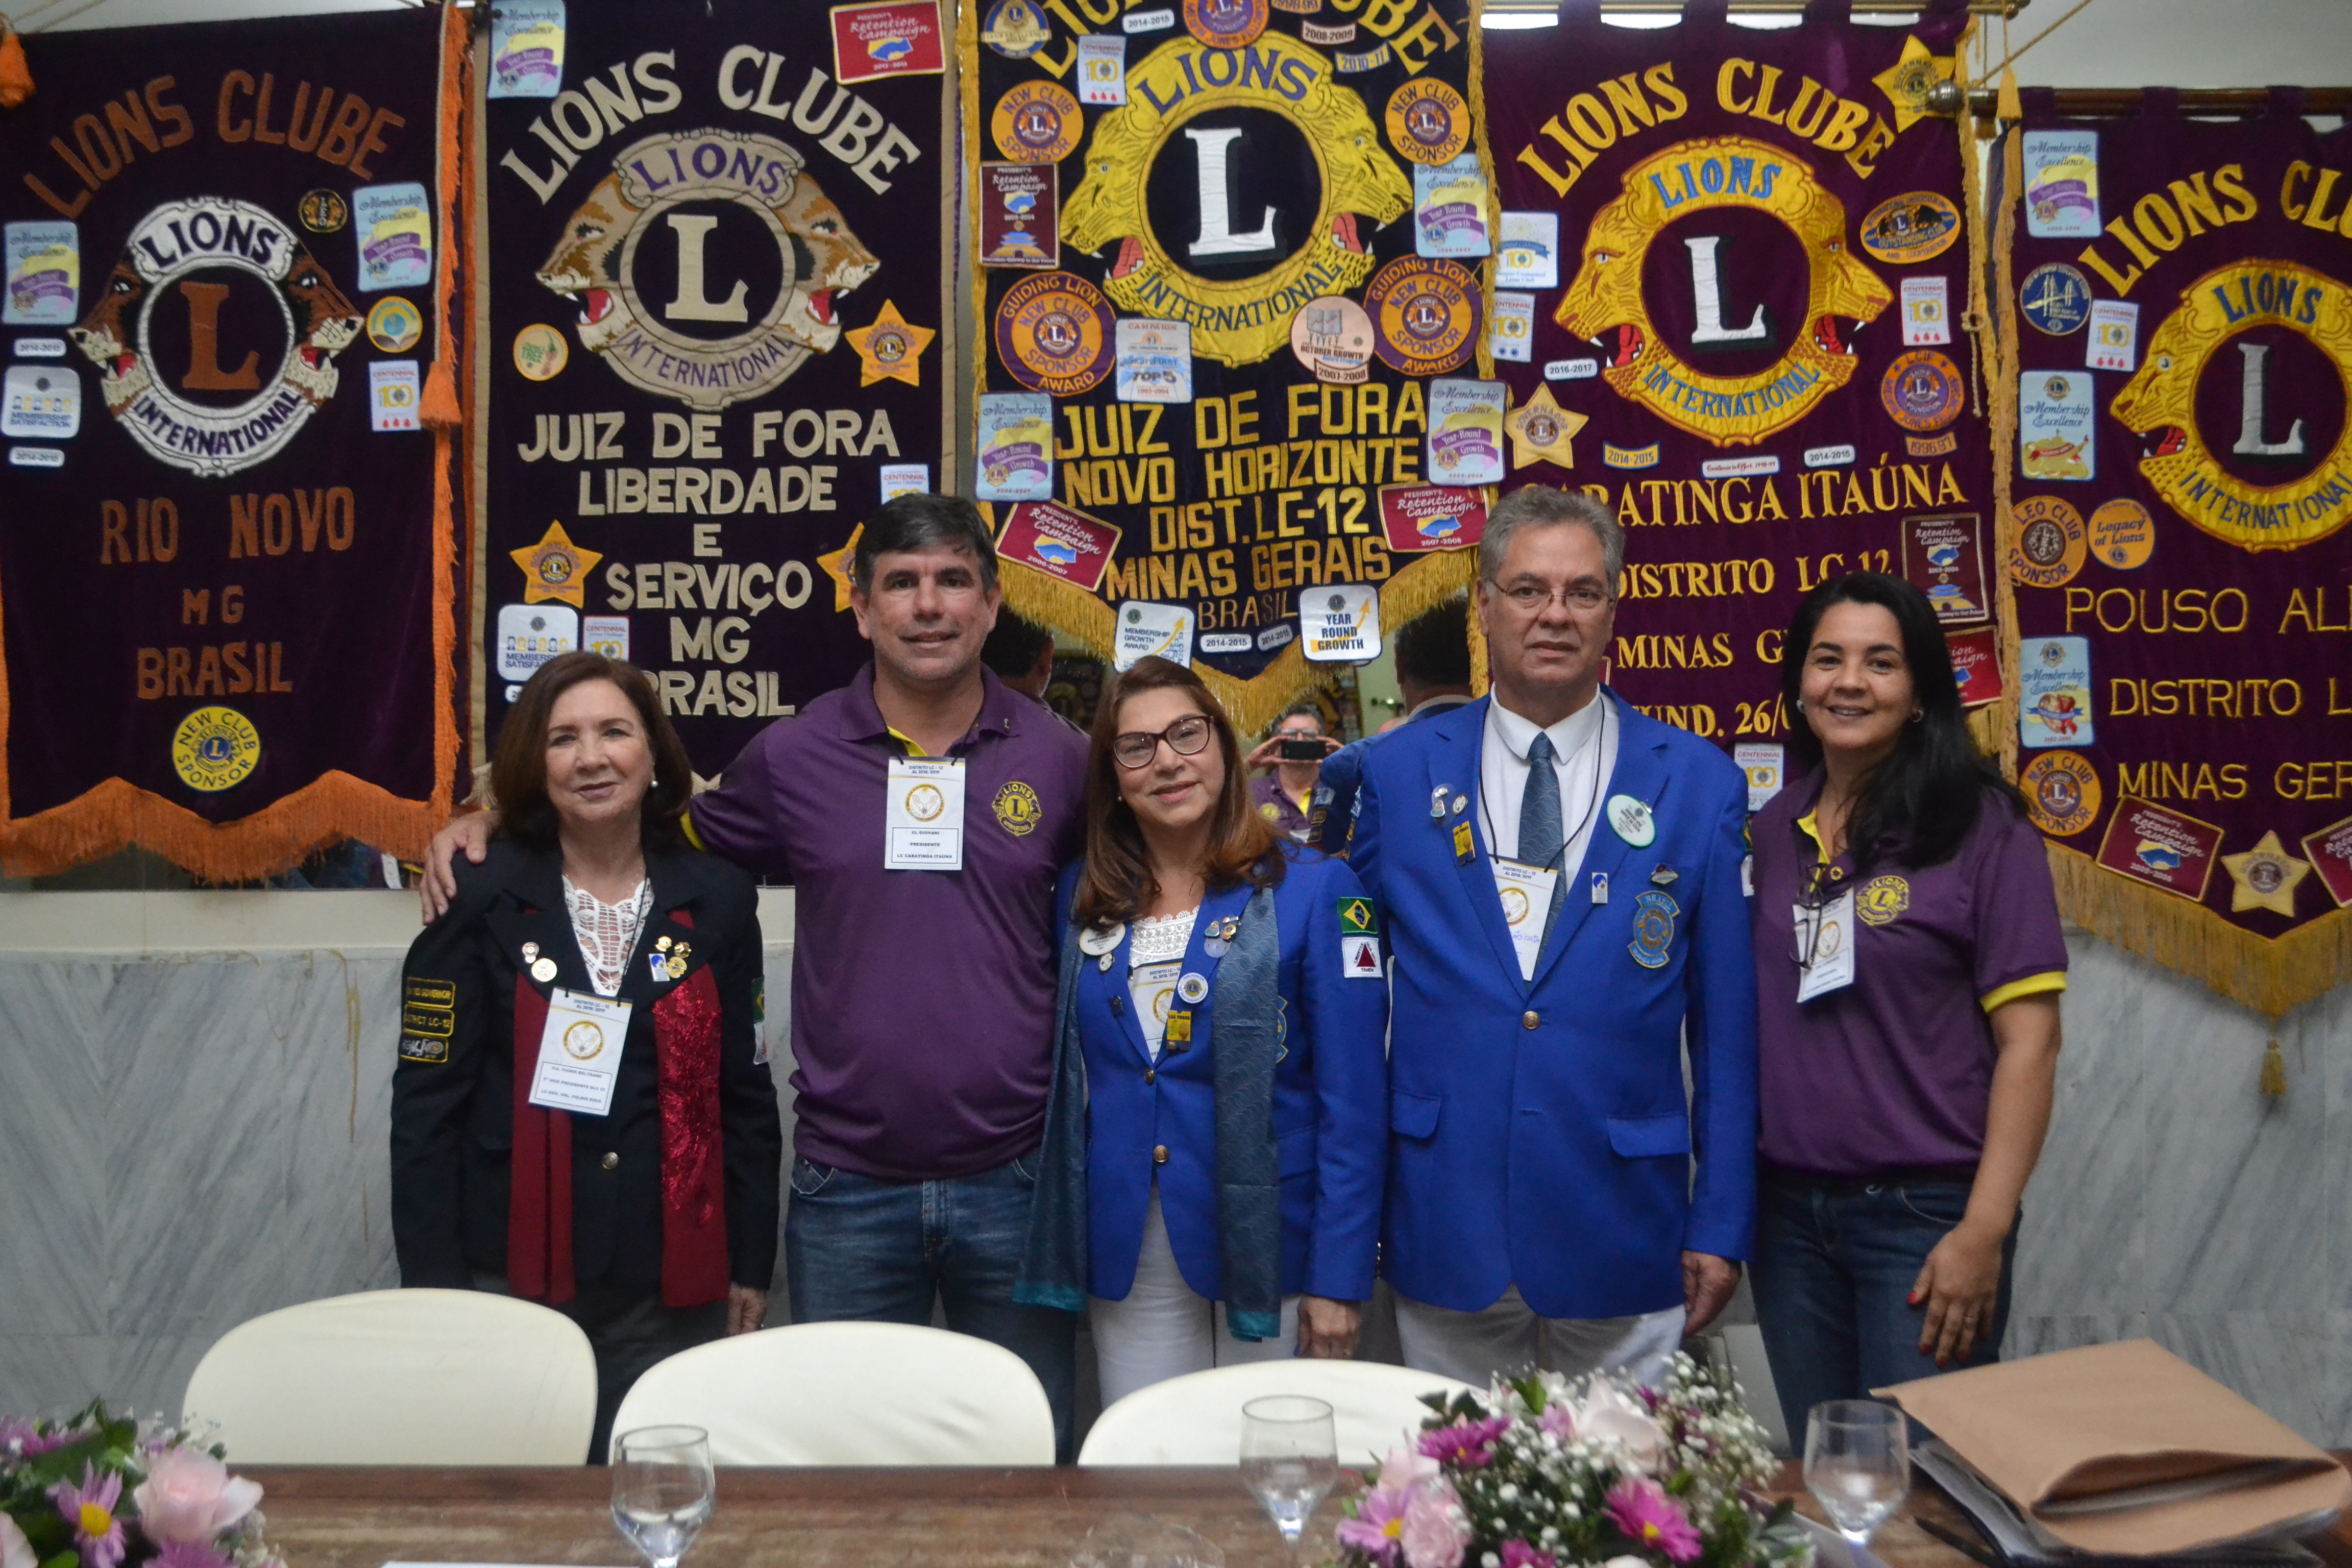 Lions Clube Caratinga Itaúna participa de reunião em Juiz de Fora e comemora premiações recebidas